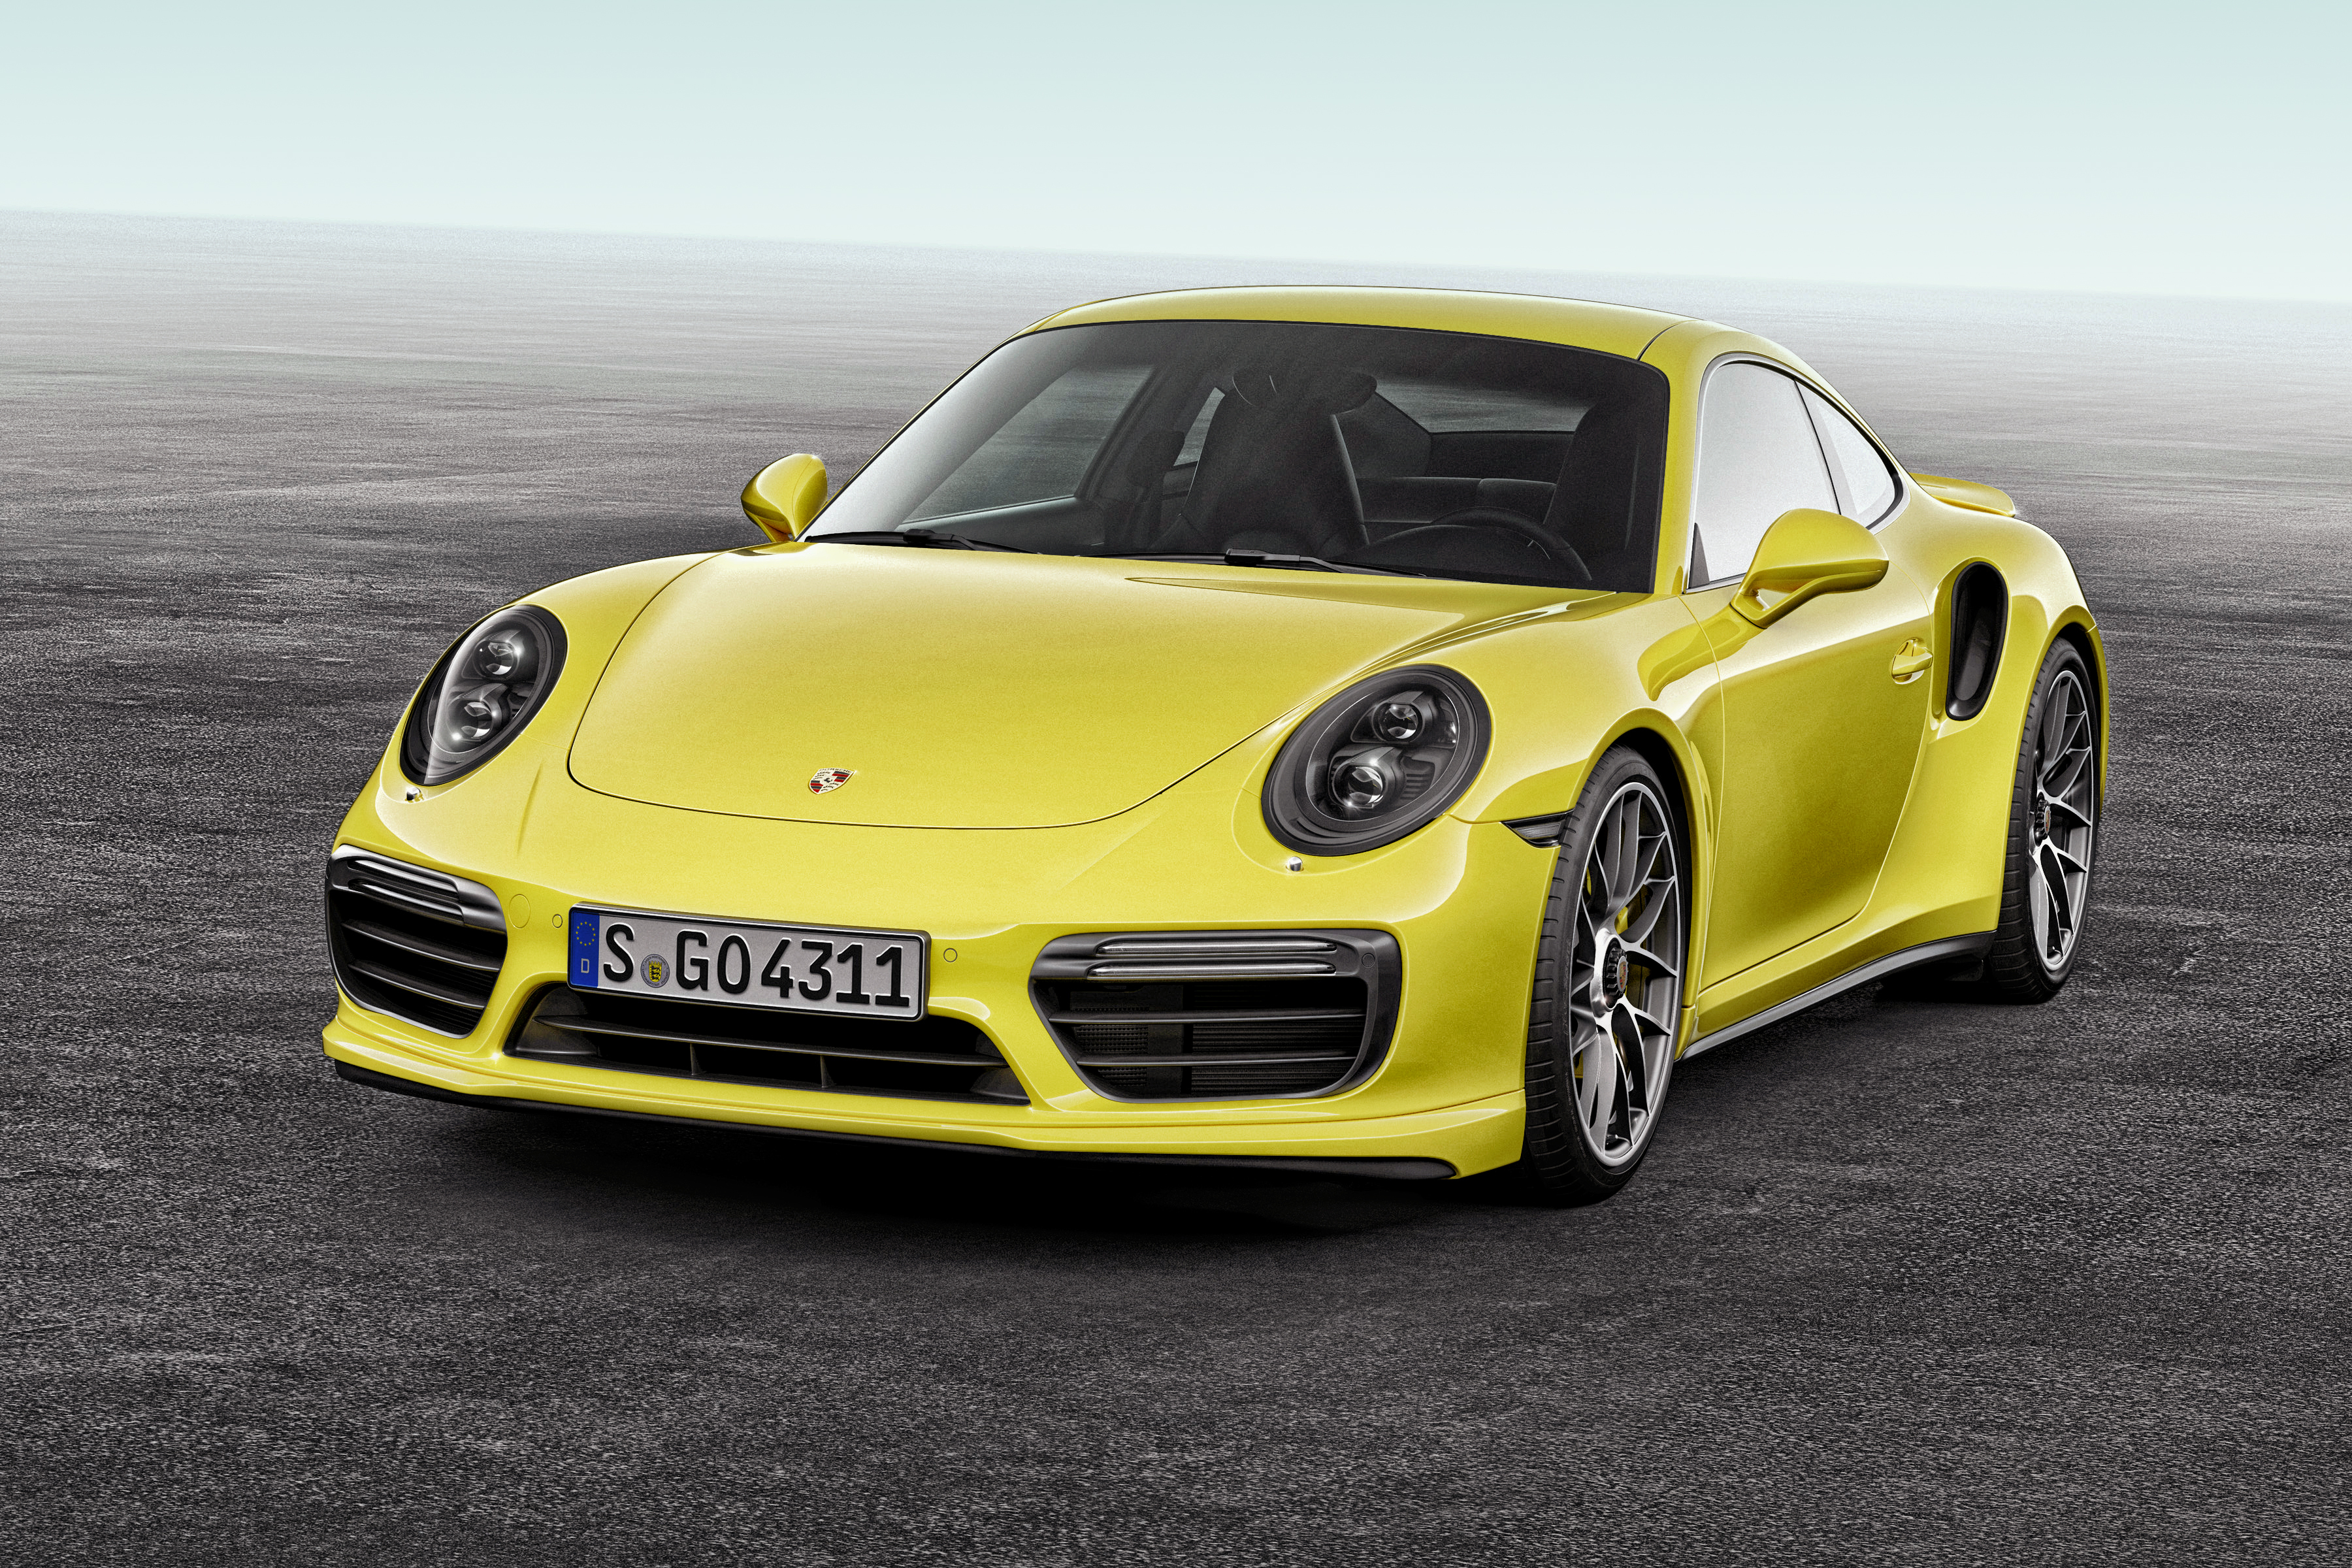 Download mobile wallpaper Porsche, Car, Porsche 911, Vehicles, Yellow Car, Porsche 911 Turbo for free.